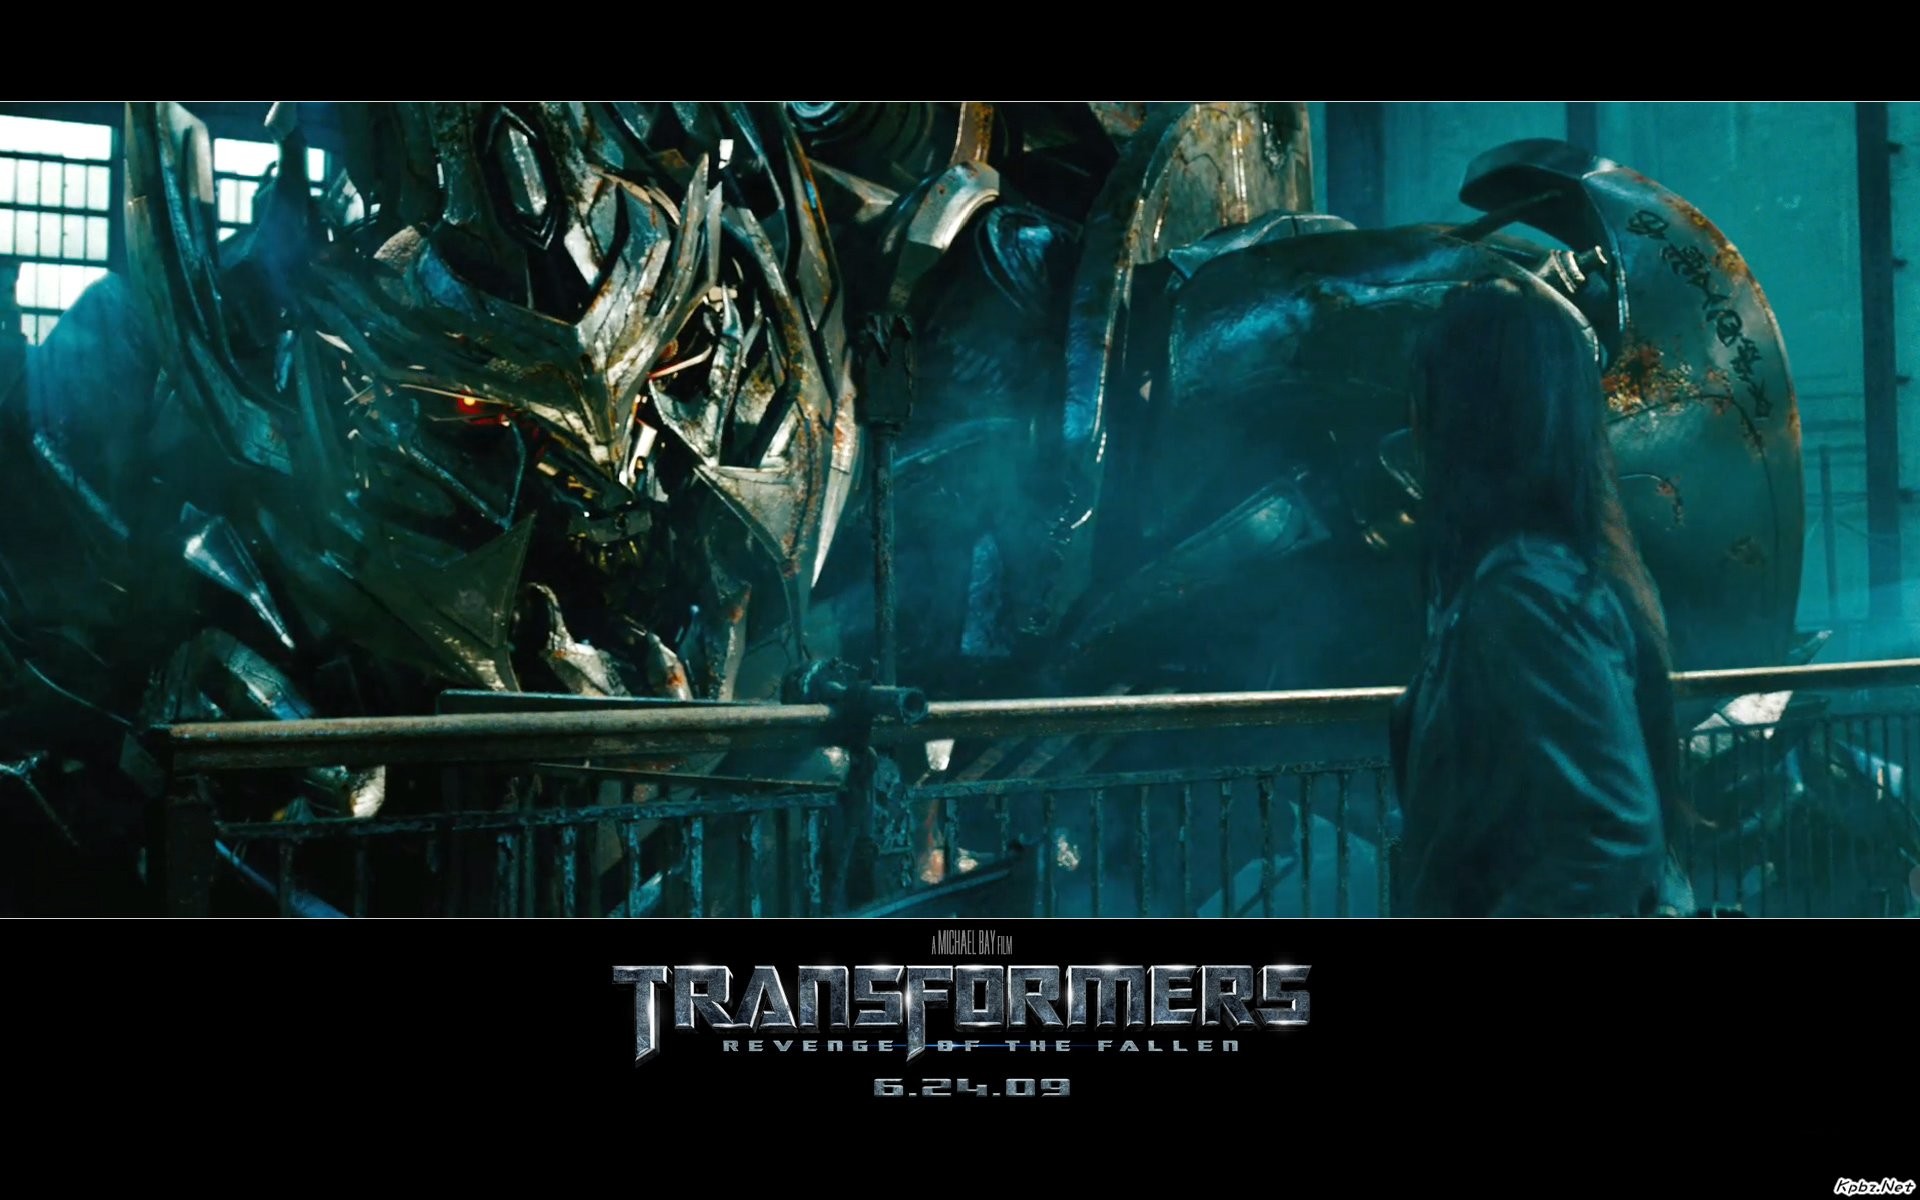 Transformers HD papel tapiz #13 - 1920x1200